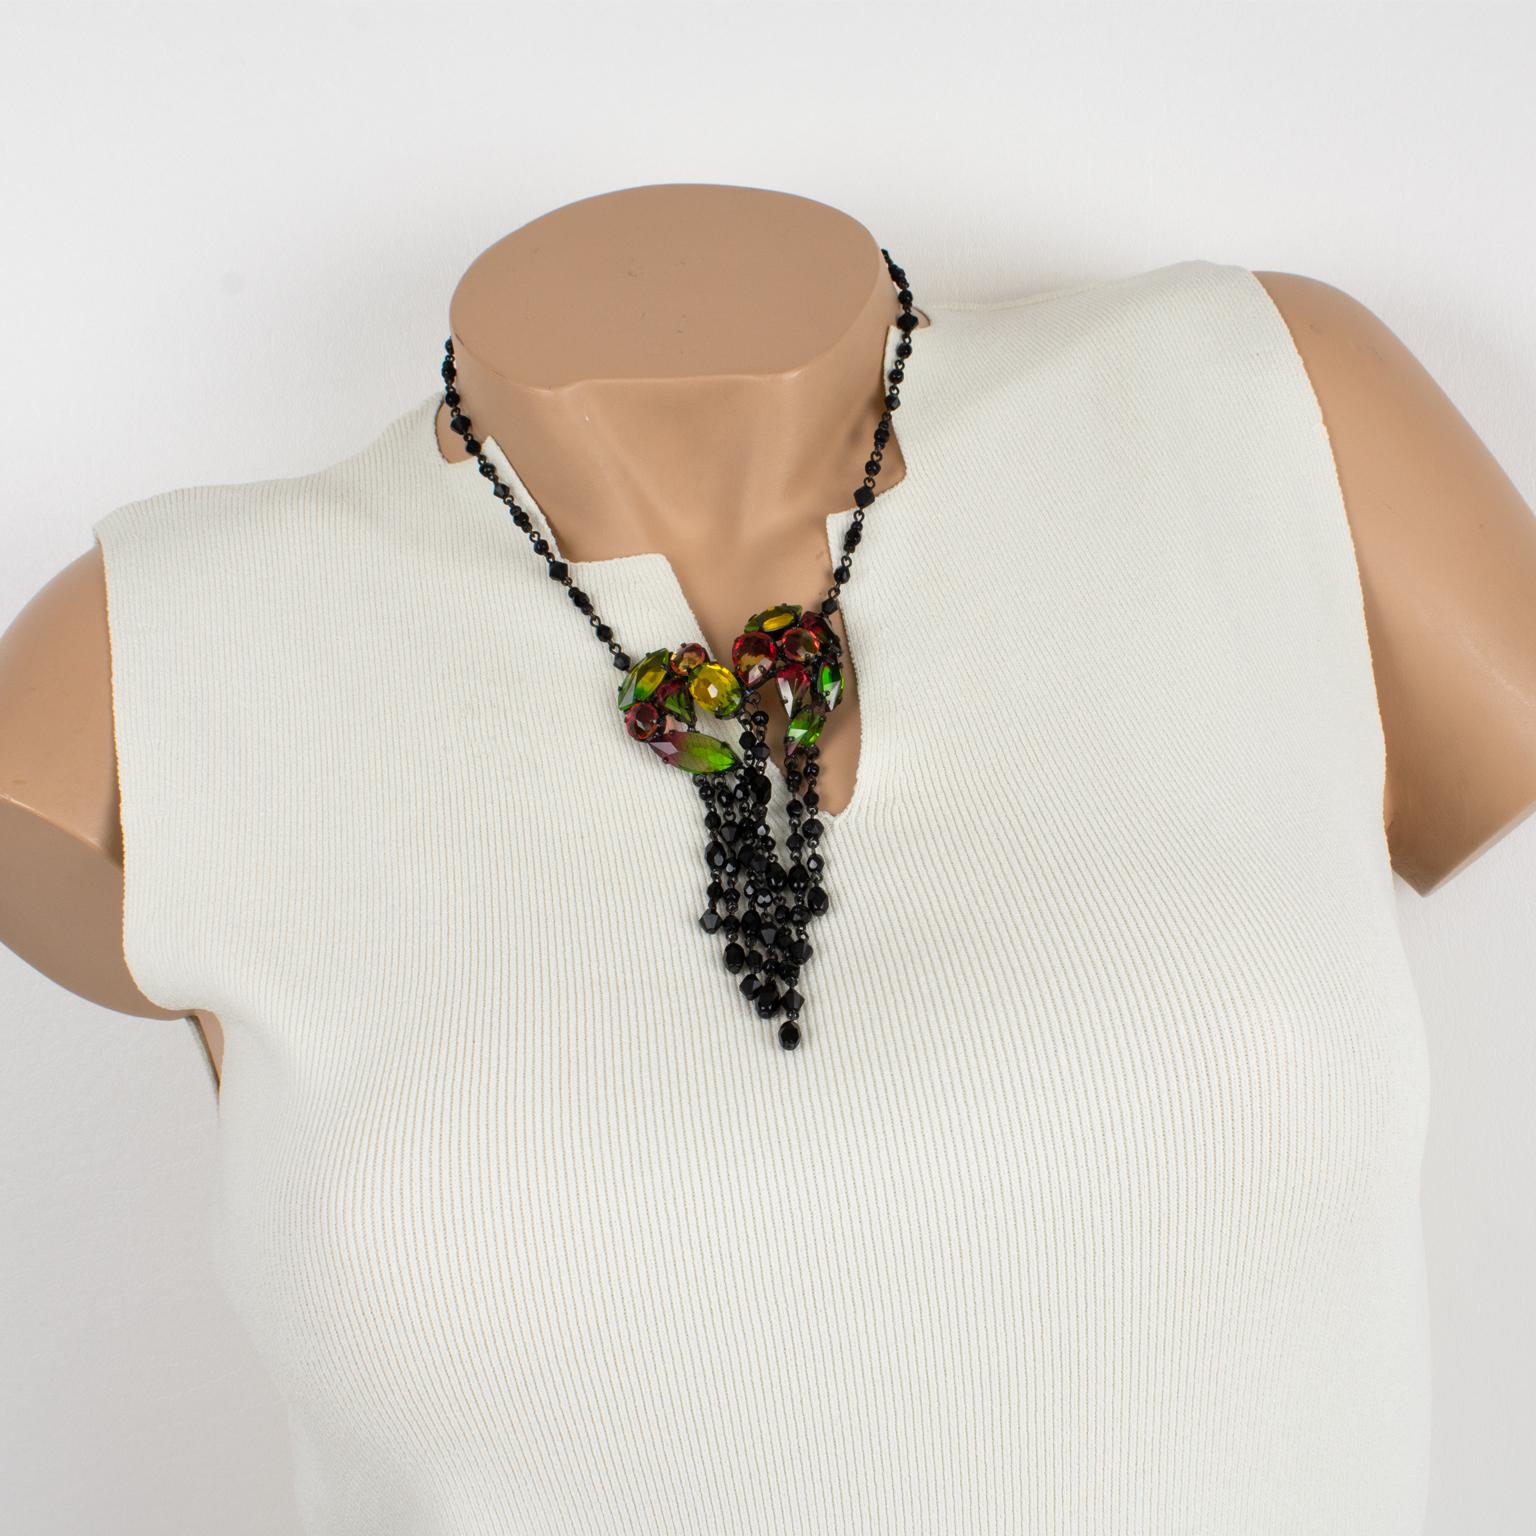 Diese romantische Perlenkette von Jean Paul Gaultier Paris hat ein viktorianisch inspiriertes Design mit einer schwarzen Metallkette, die mit schwarzen Jet-Perlen verziert ist, und einem baumelnden Anhänger, der mit Strasssteinen verziert ist. Das